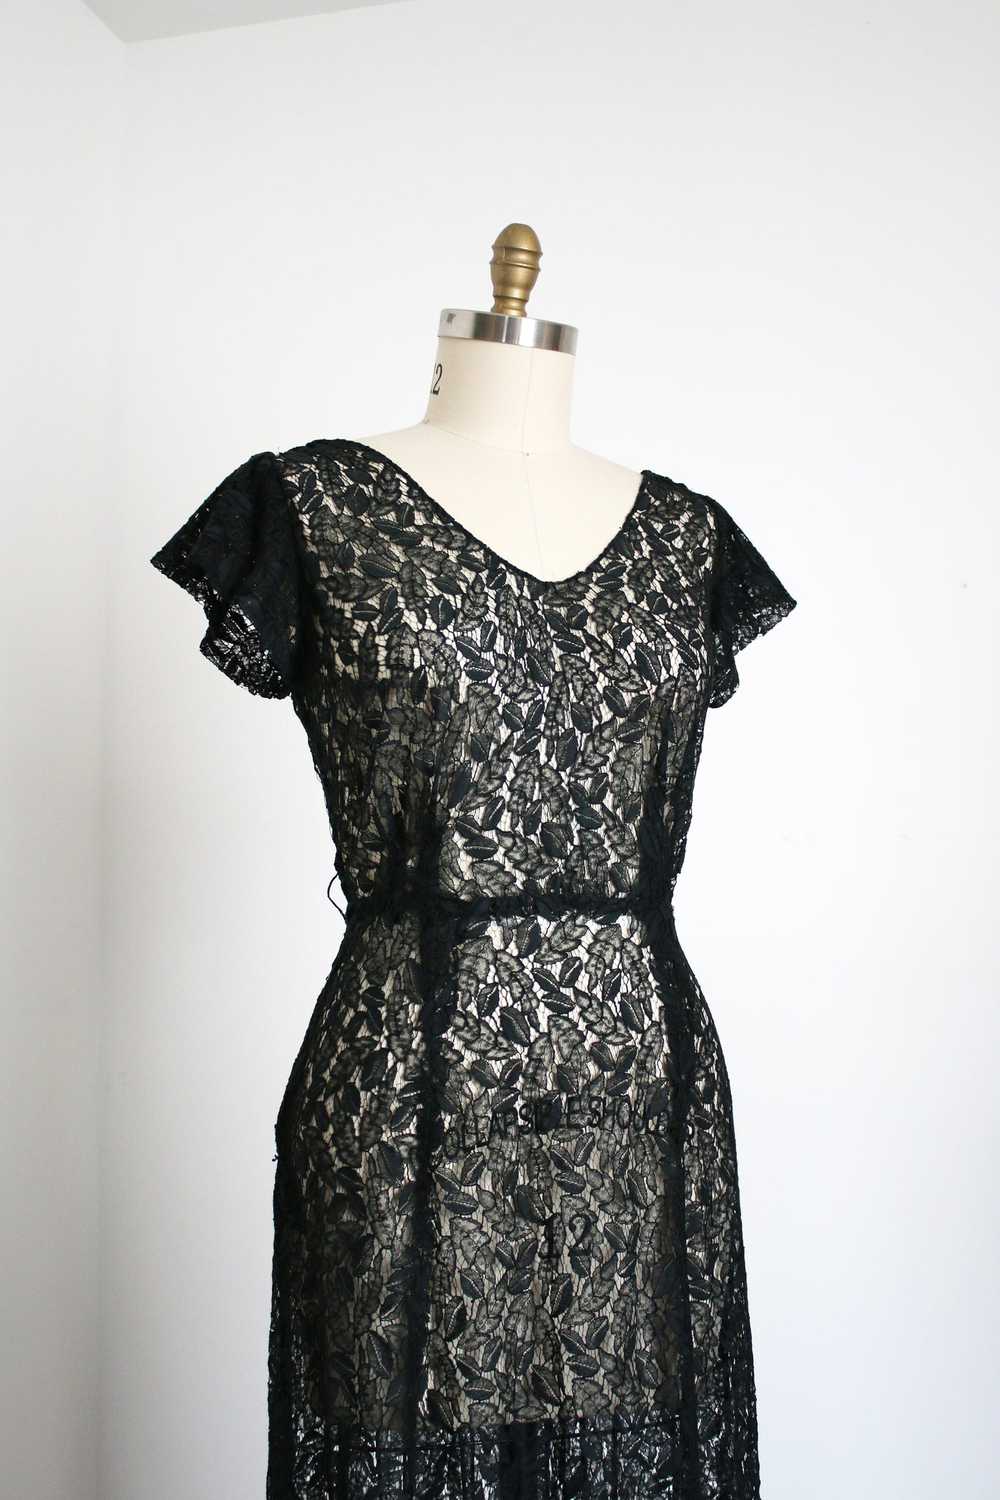 vintage 1930s black leaf lace dress {L} - image 2